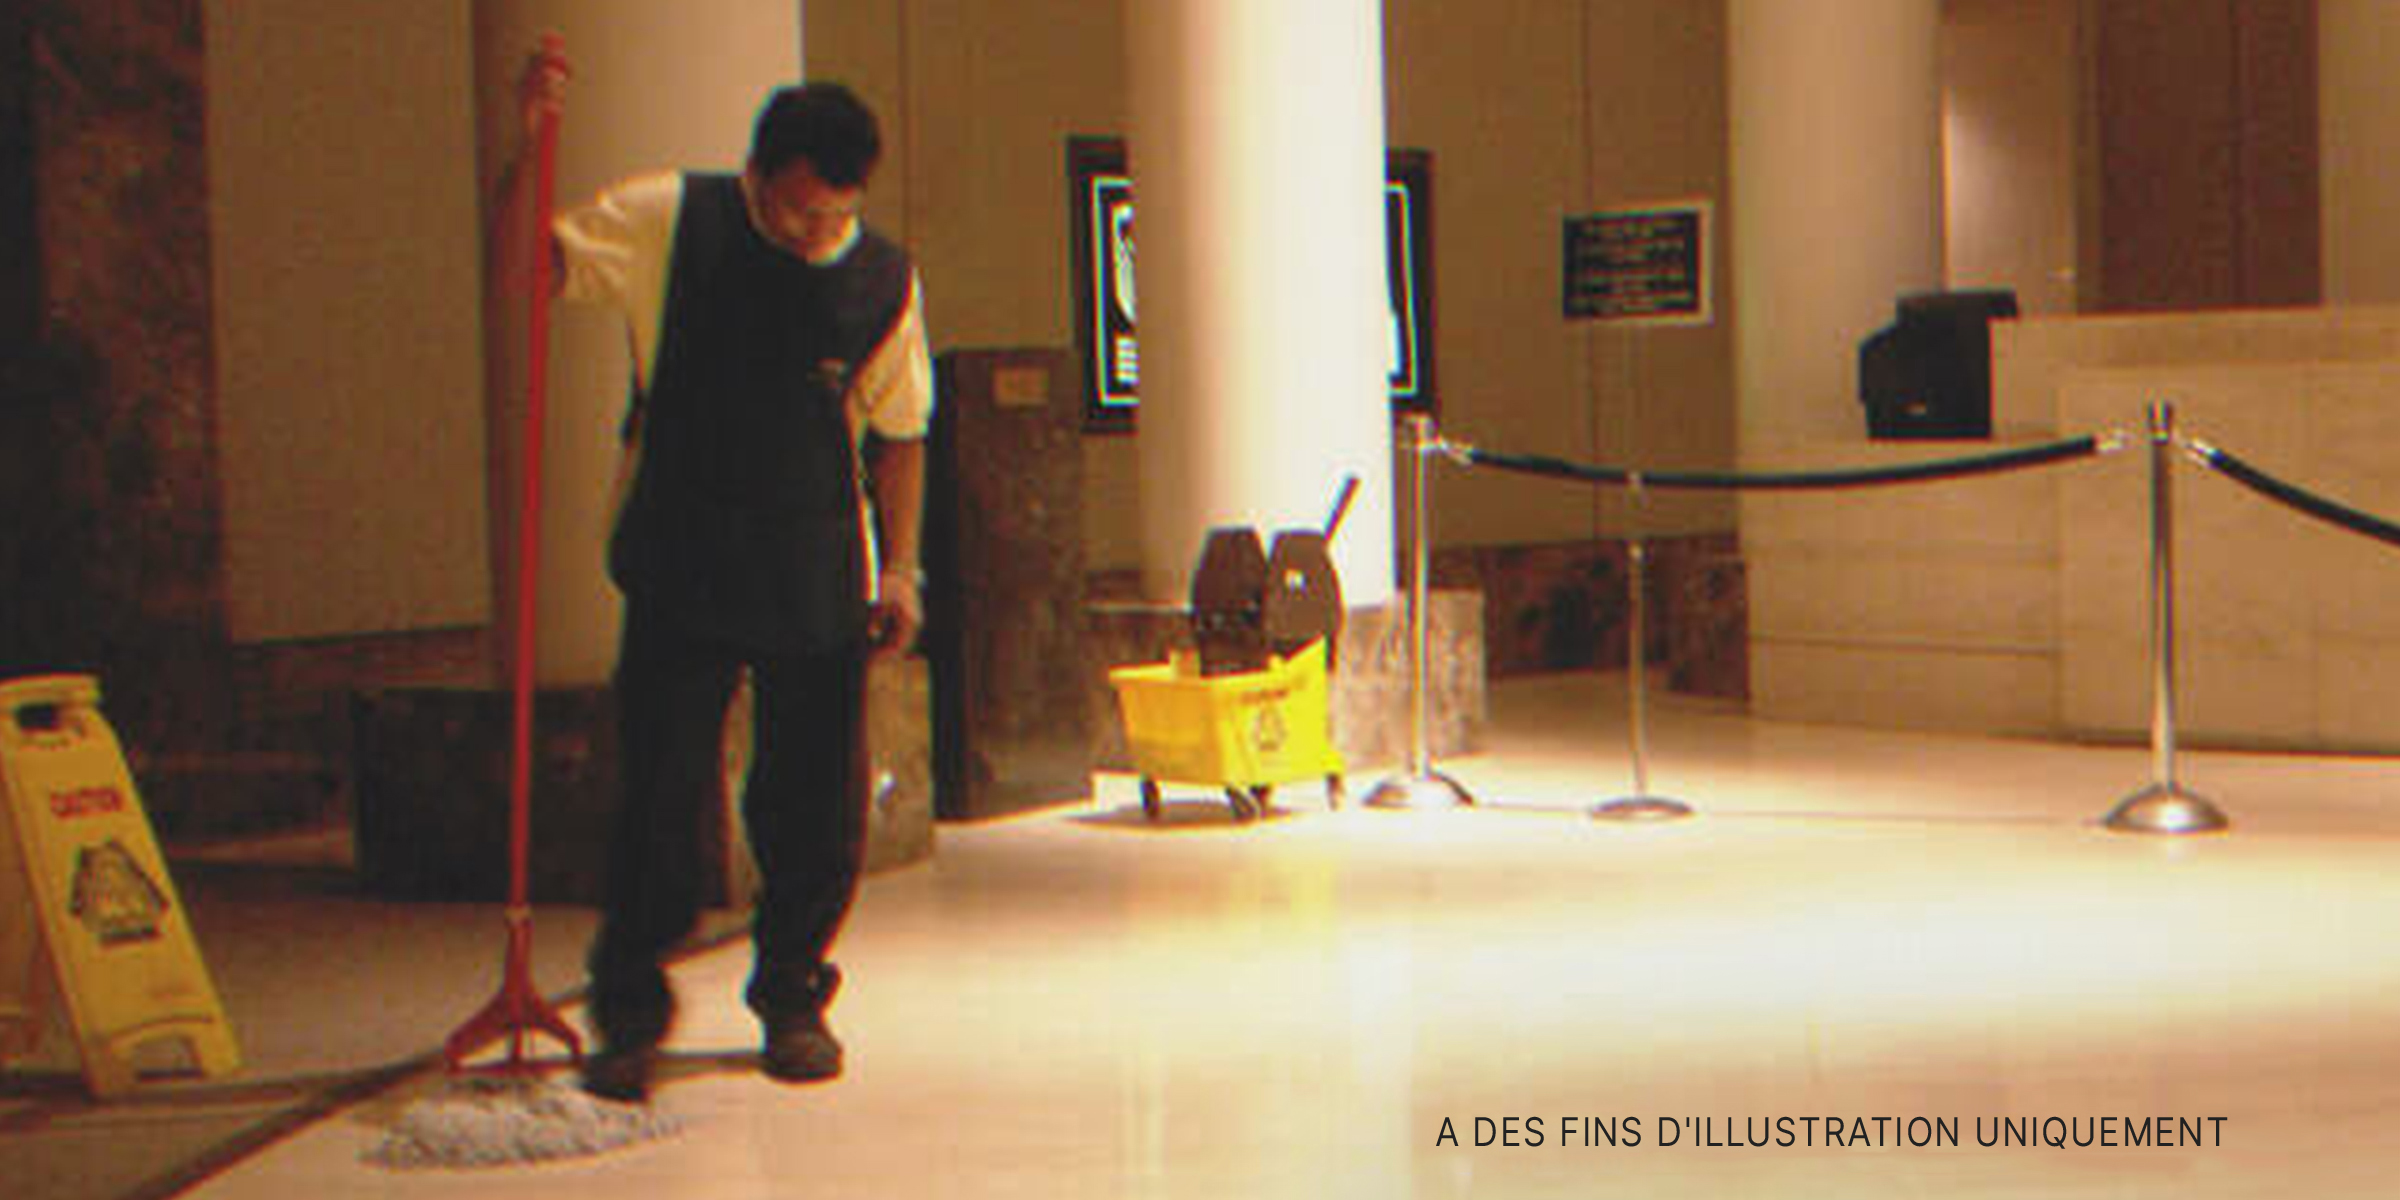 Un concierge nettoyant le sol. | Source : Flickr / Daquella manera (Public Domain)